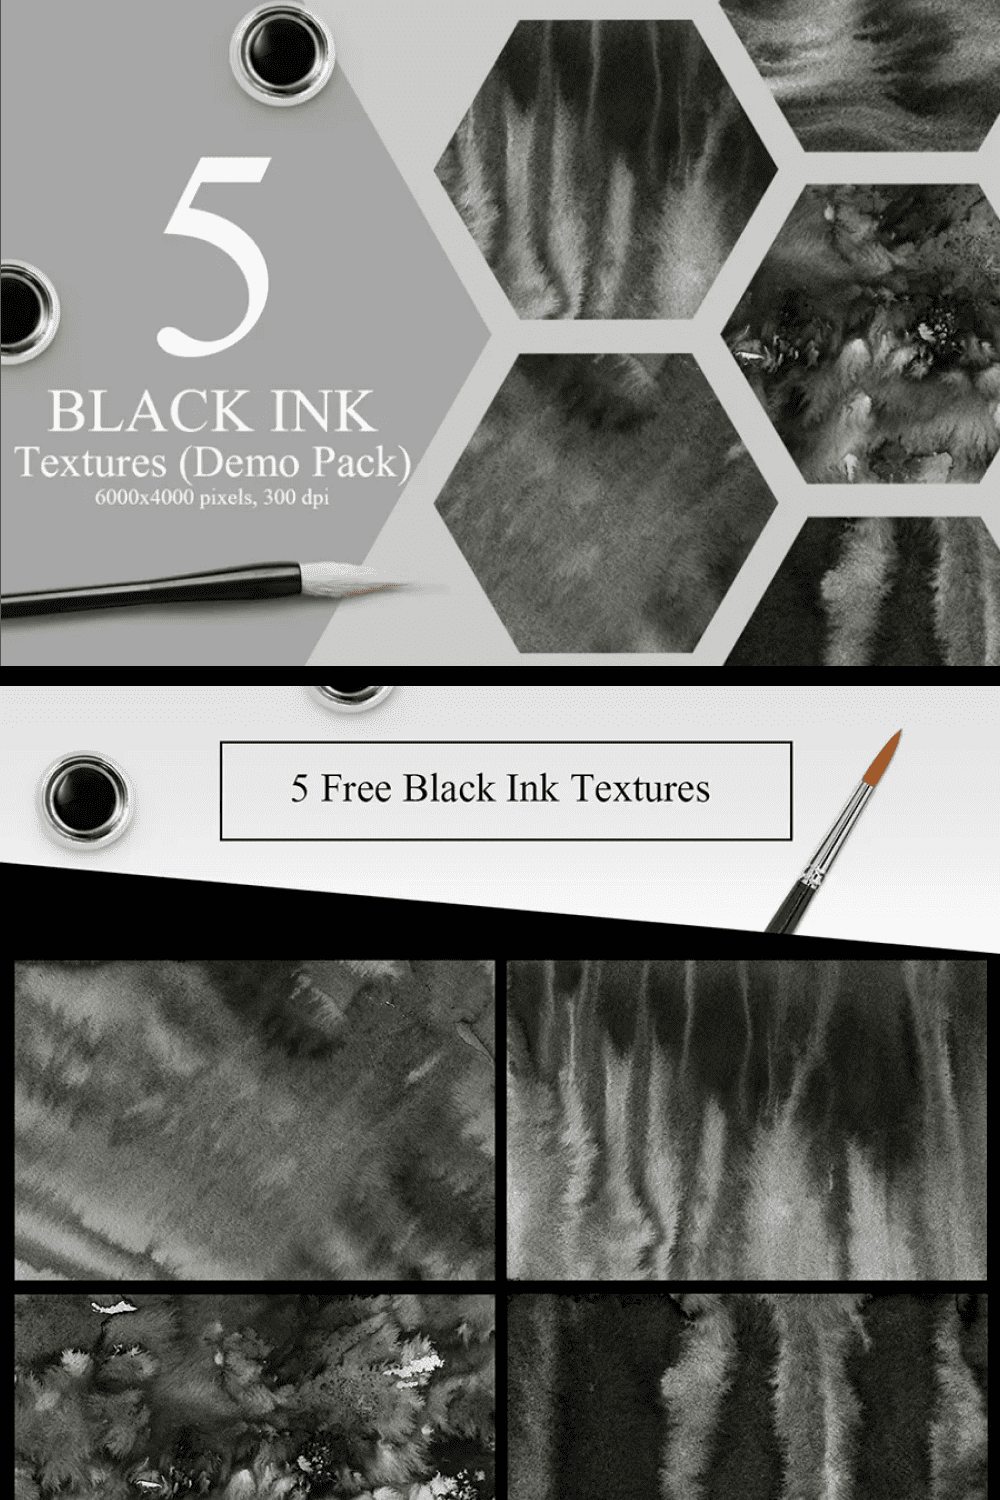 Black ink textures.